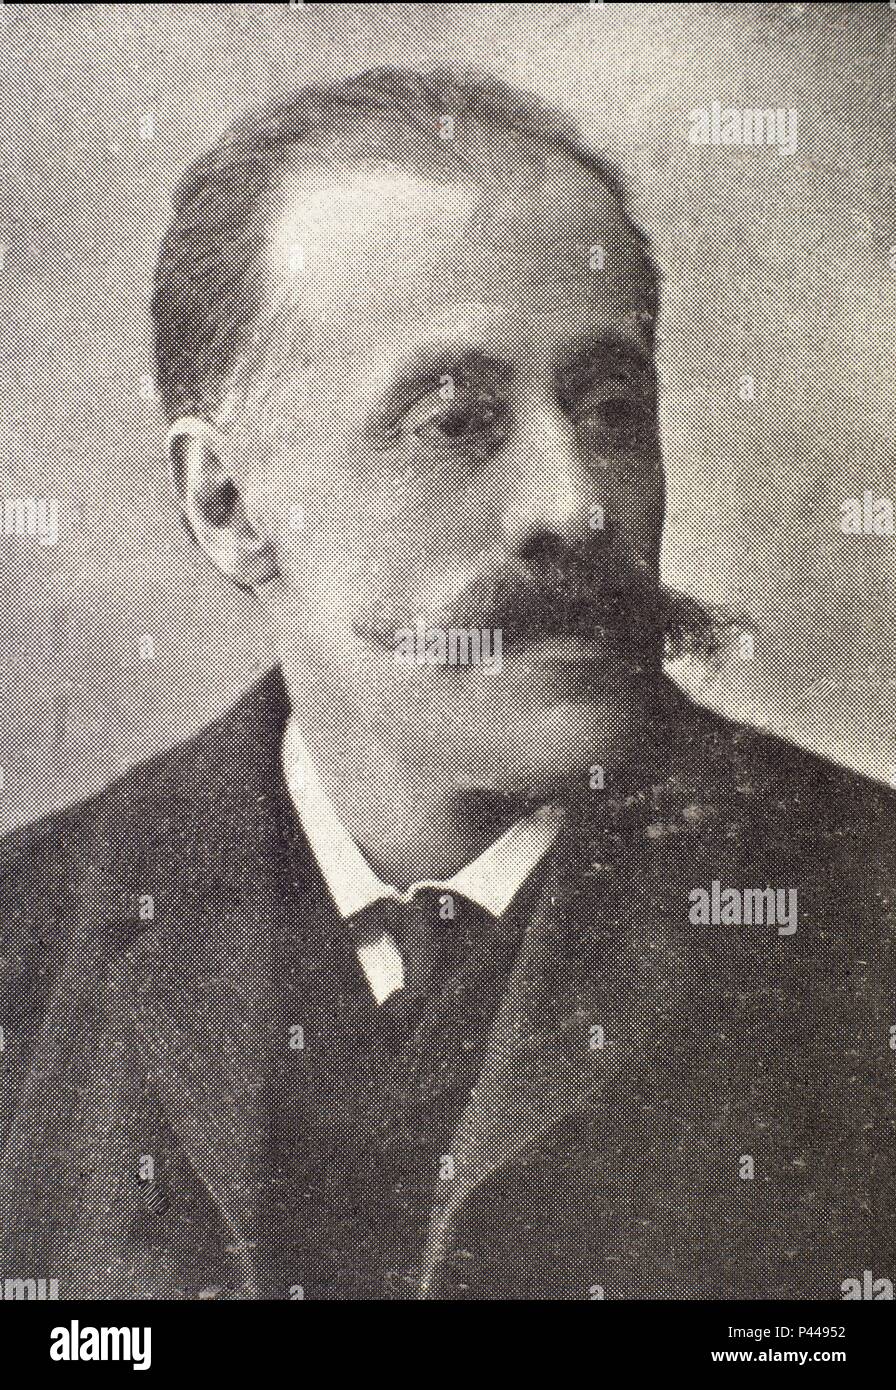 JOSE ZAHONERO (1853-1931) - 1916 - ESCRITOR Y PERIODISTA ESPAÑOL UNO DE LOS REPRESENTANTES DEL NATURALISMO. Location: BIBLIOTECA NACIONAL-COLECCION, MADRID, SPAIN. Stock Photo